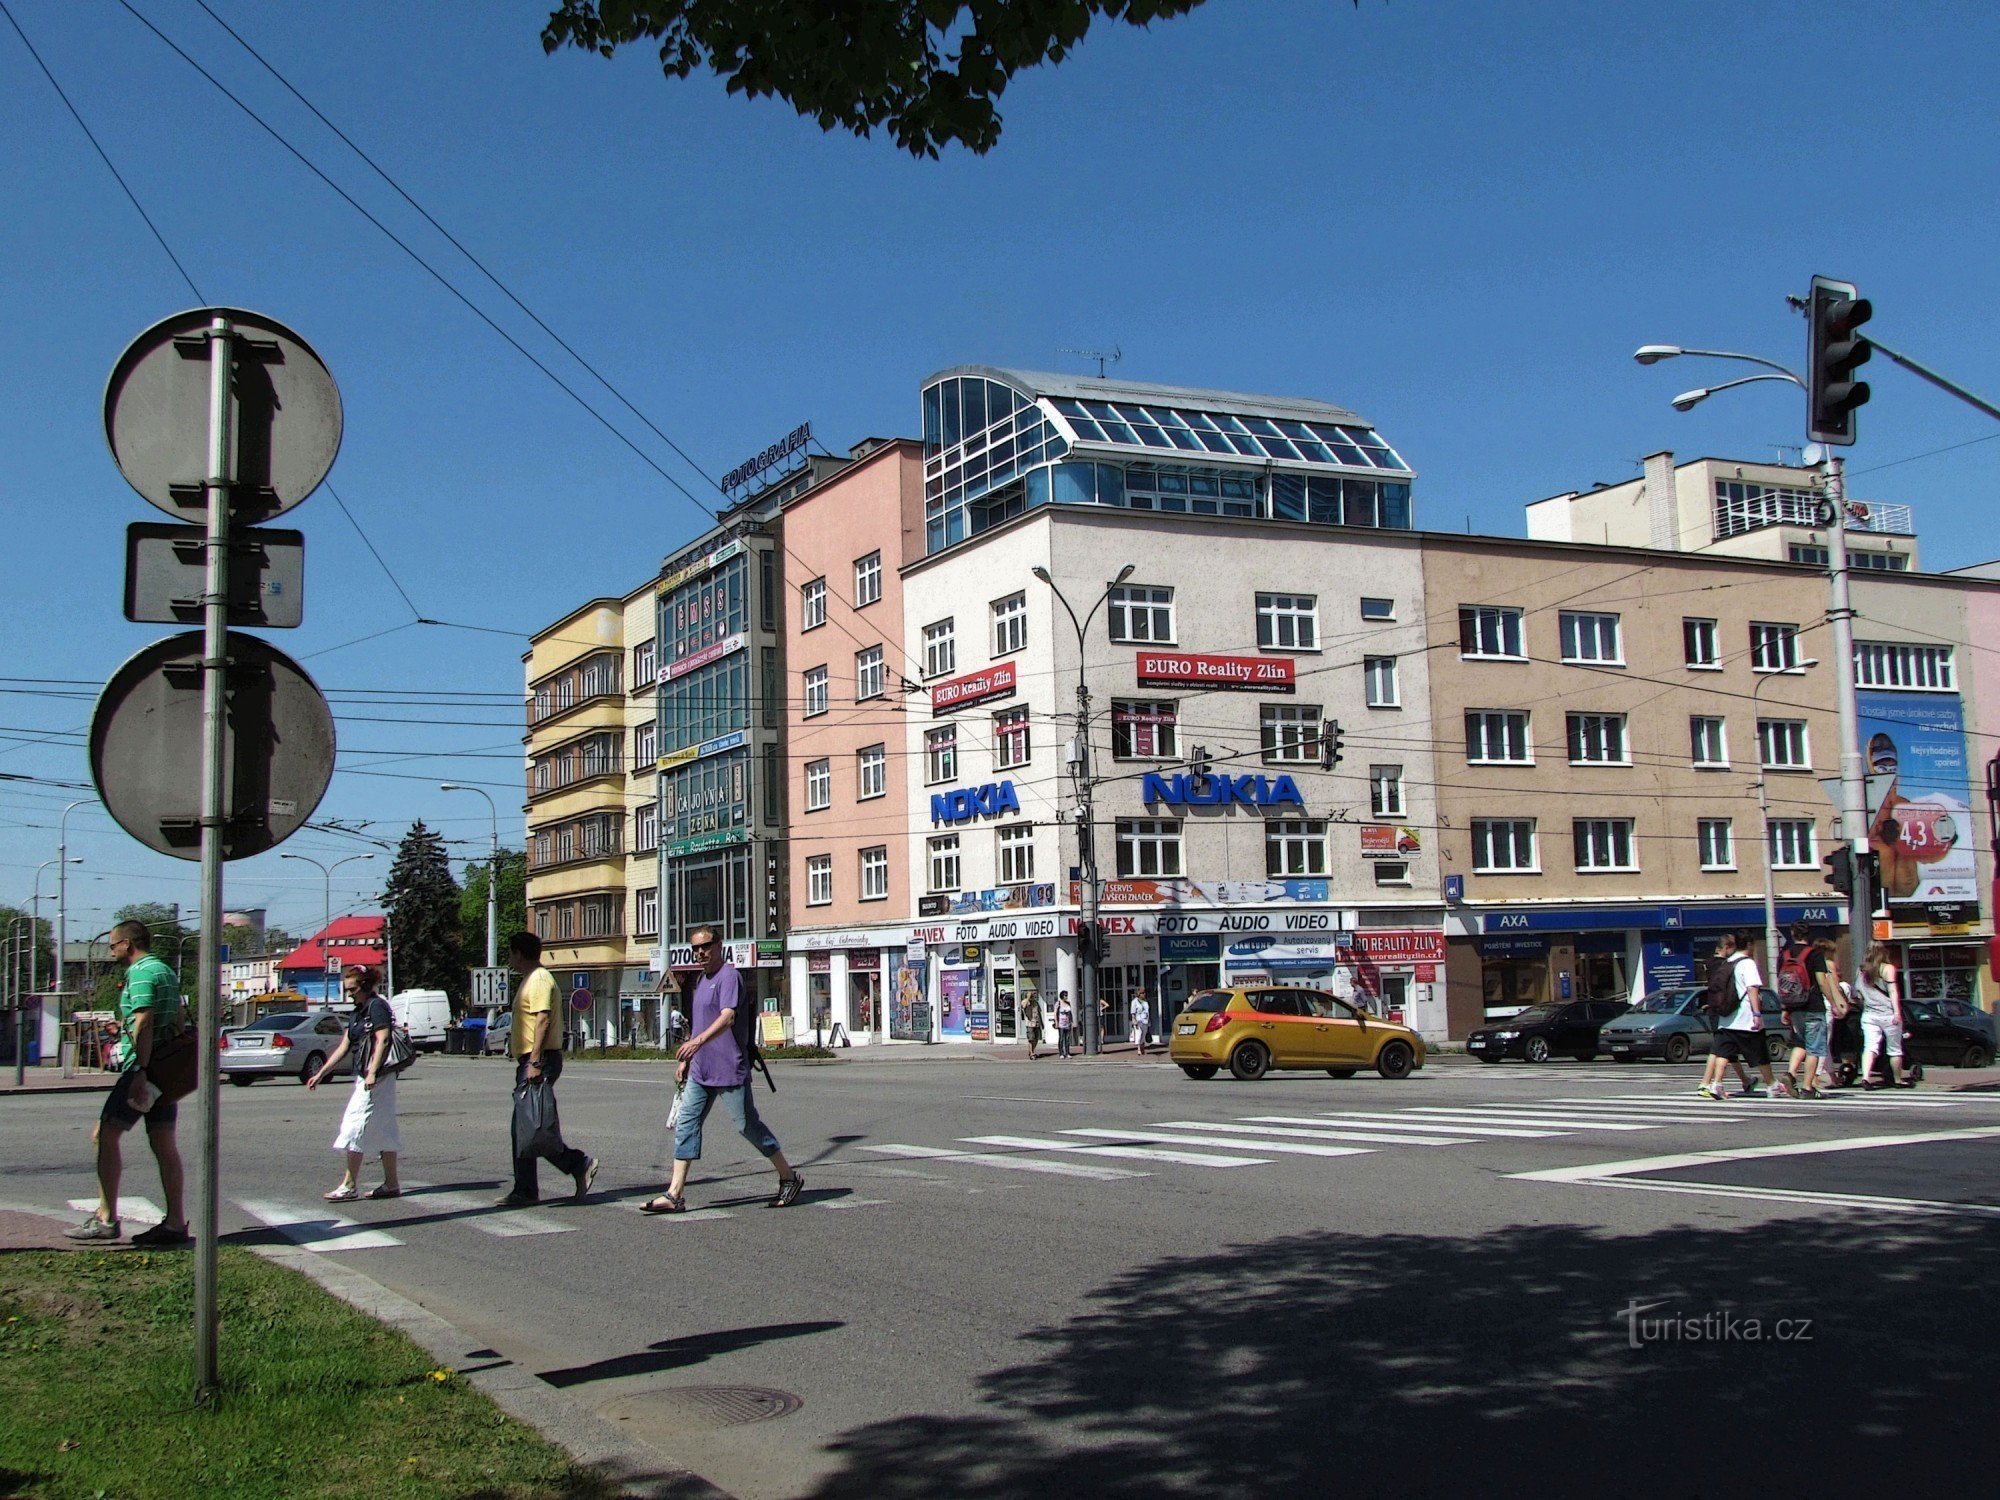 Zlín - um dos principais cruzamentos da cidade